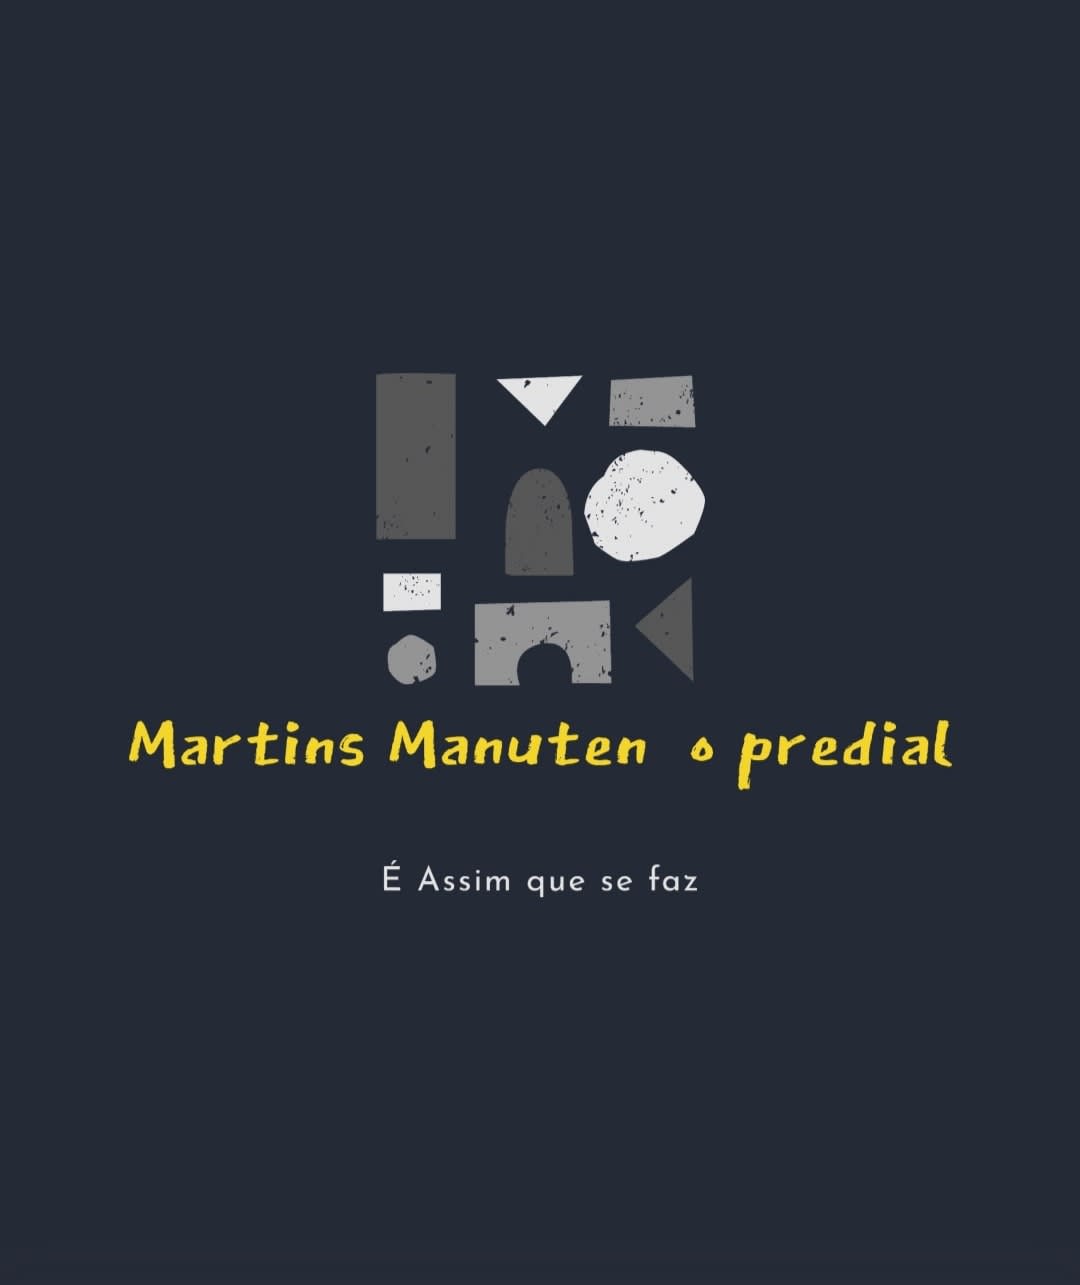 Martins Manutenção Predial